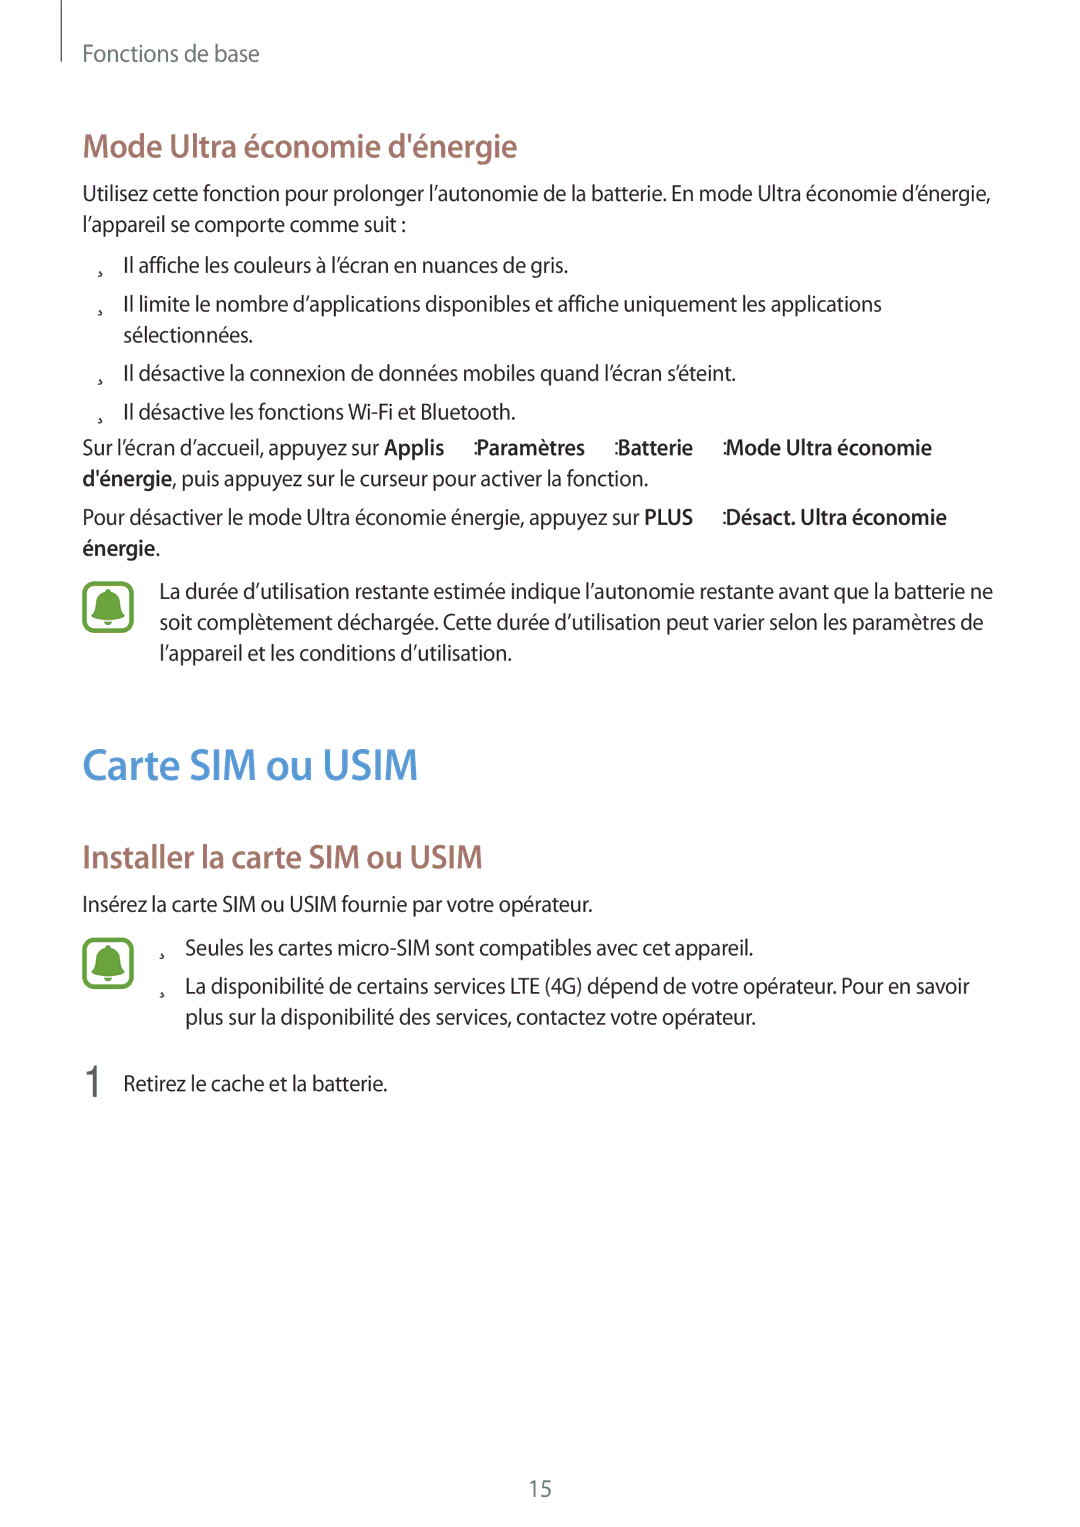 Samsung SM-G903FZSAXEF, SM-G903FZKAXEF Carte SIM ou Usim, Mode Ultra économie dénergie, Installer la carte SIM ou Usim 